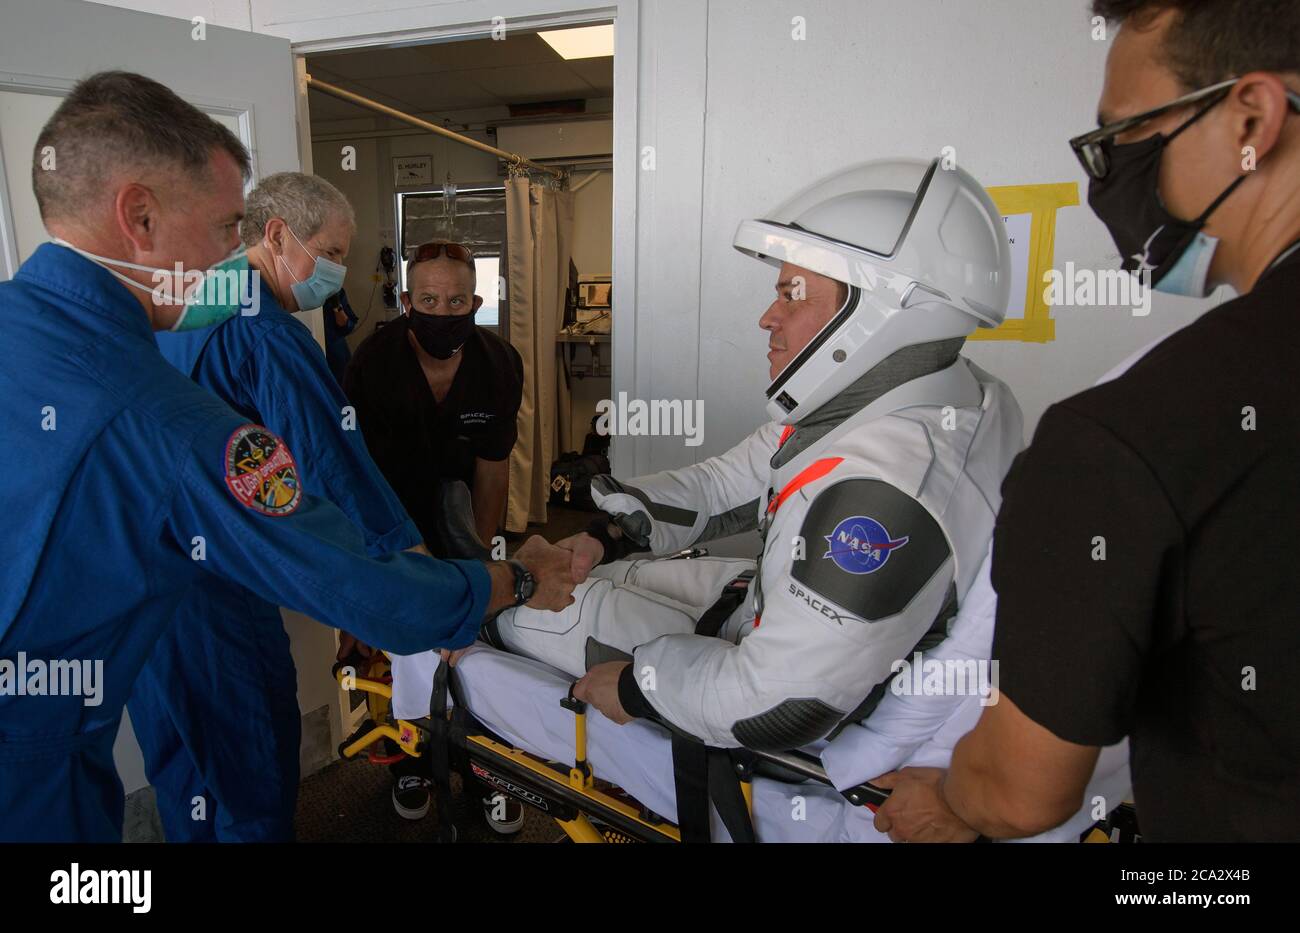 GOLF VON MEXIKO, USA - 02. August 2020 - NASA-Astronaut Robert Behnken wird nach dem Ausstieg von NASA-Astronaut und Crew Recovery Chief Shane Kimbrough begrüßt Stockfoto